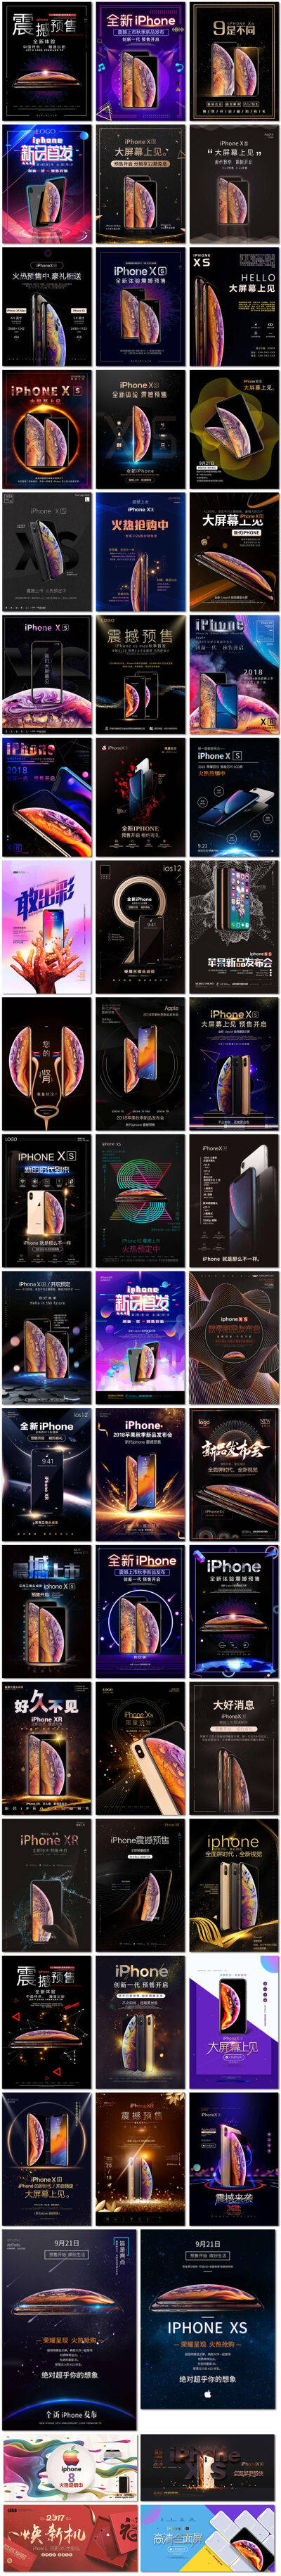 苹果电商活动iphone大屏手机促销新品上市海报psd模板素材设计